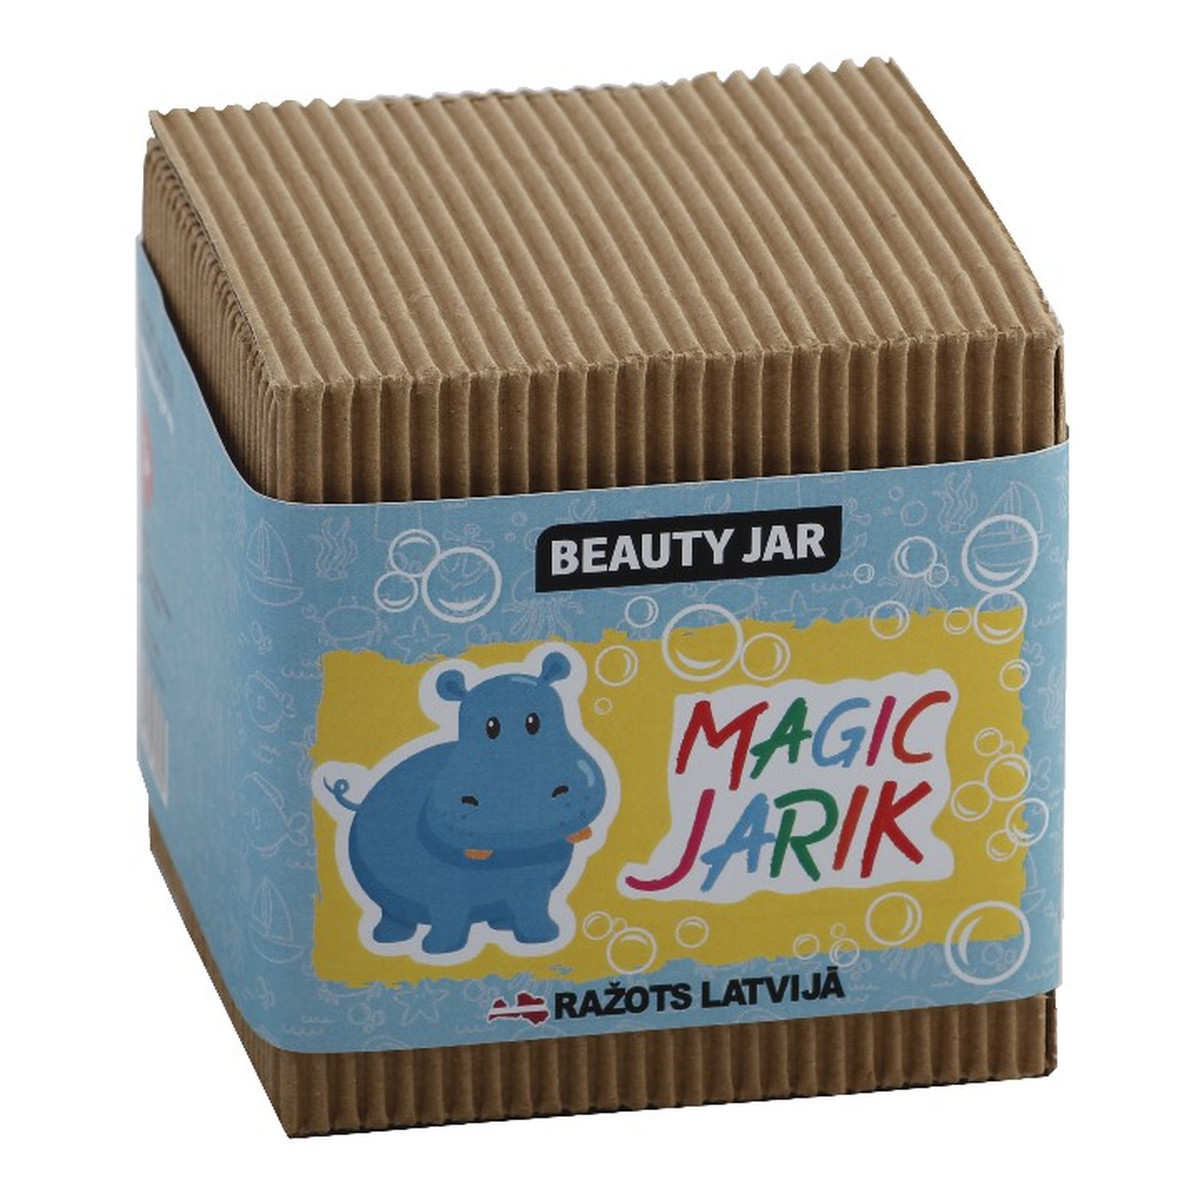 Beauty Jar MAGIC JARIK Zestaw podarunkowy dla dzieci 160g